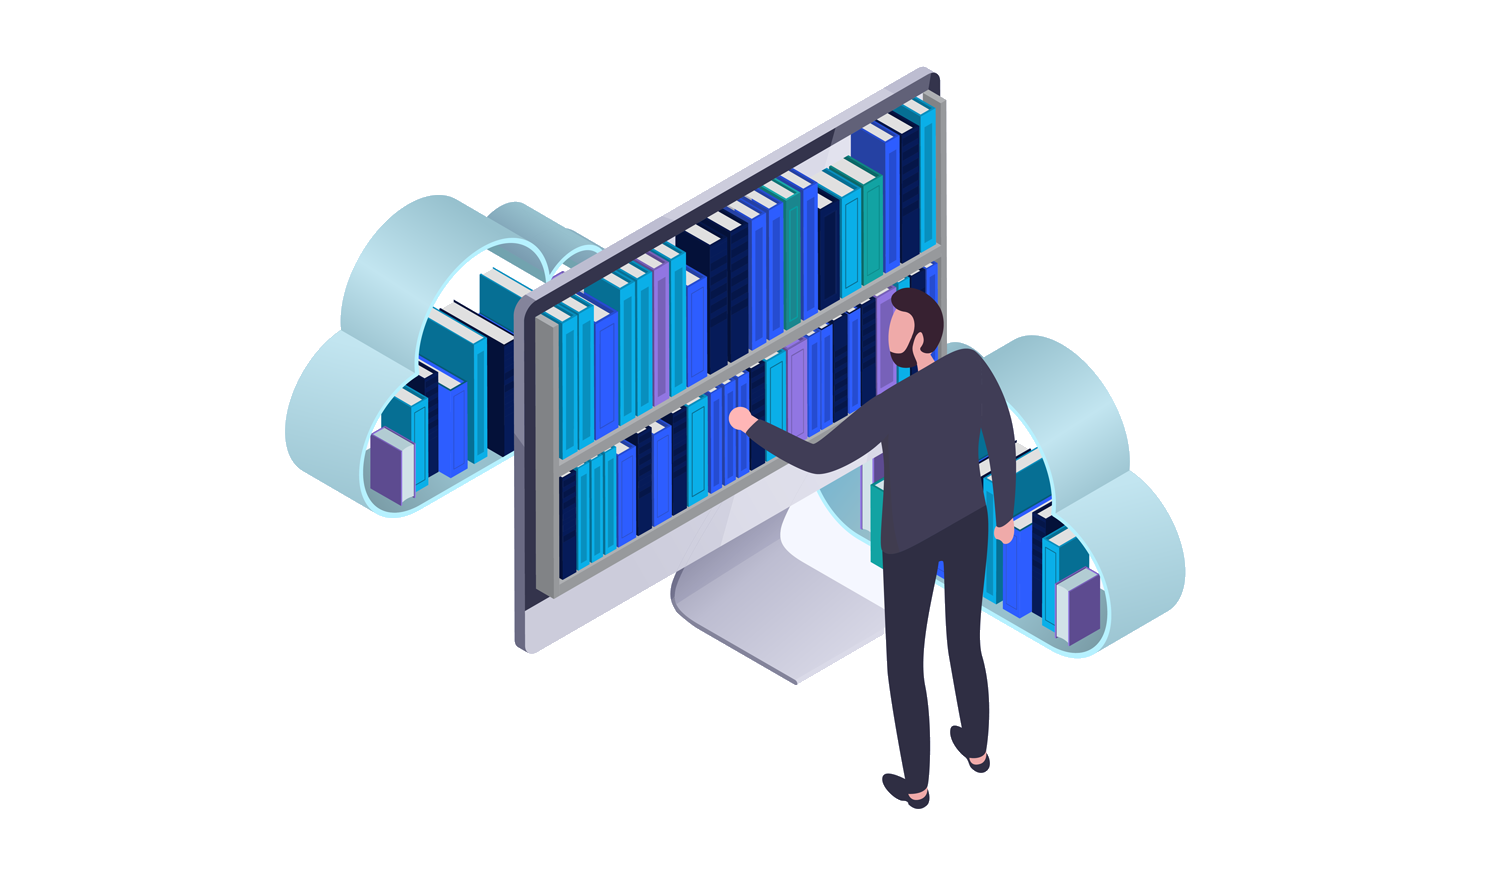 Grafik eines Mannes, der sich Daten aus einem virtuellen Bücherregel nimmt, das von der Cloud umgeben ist.